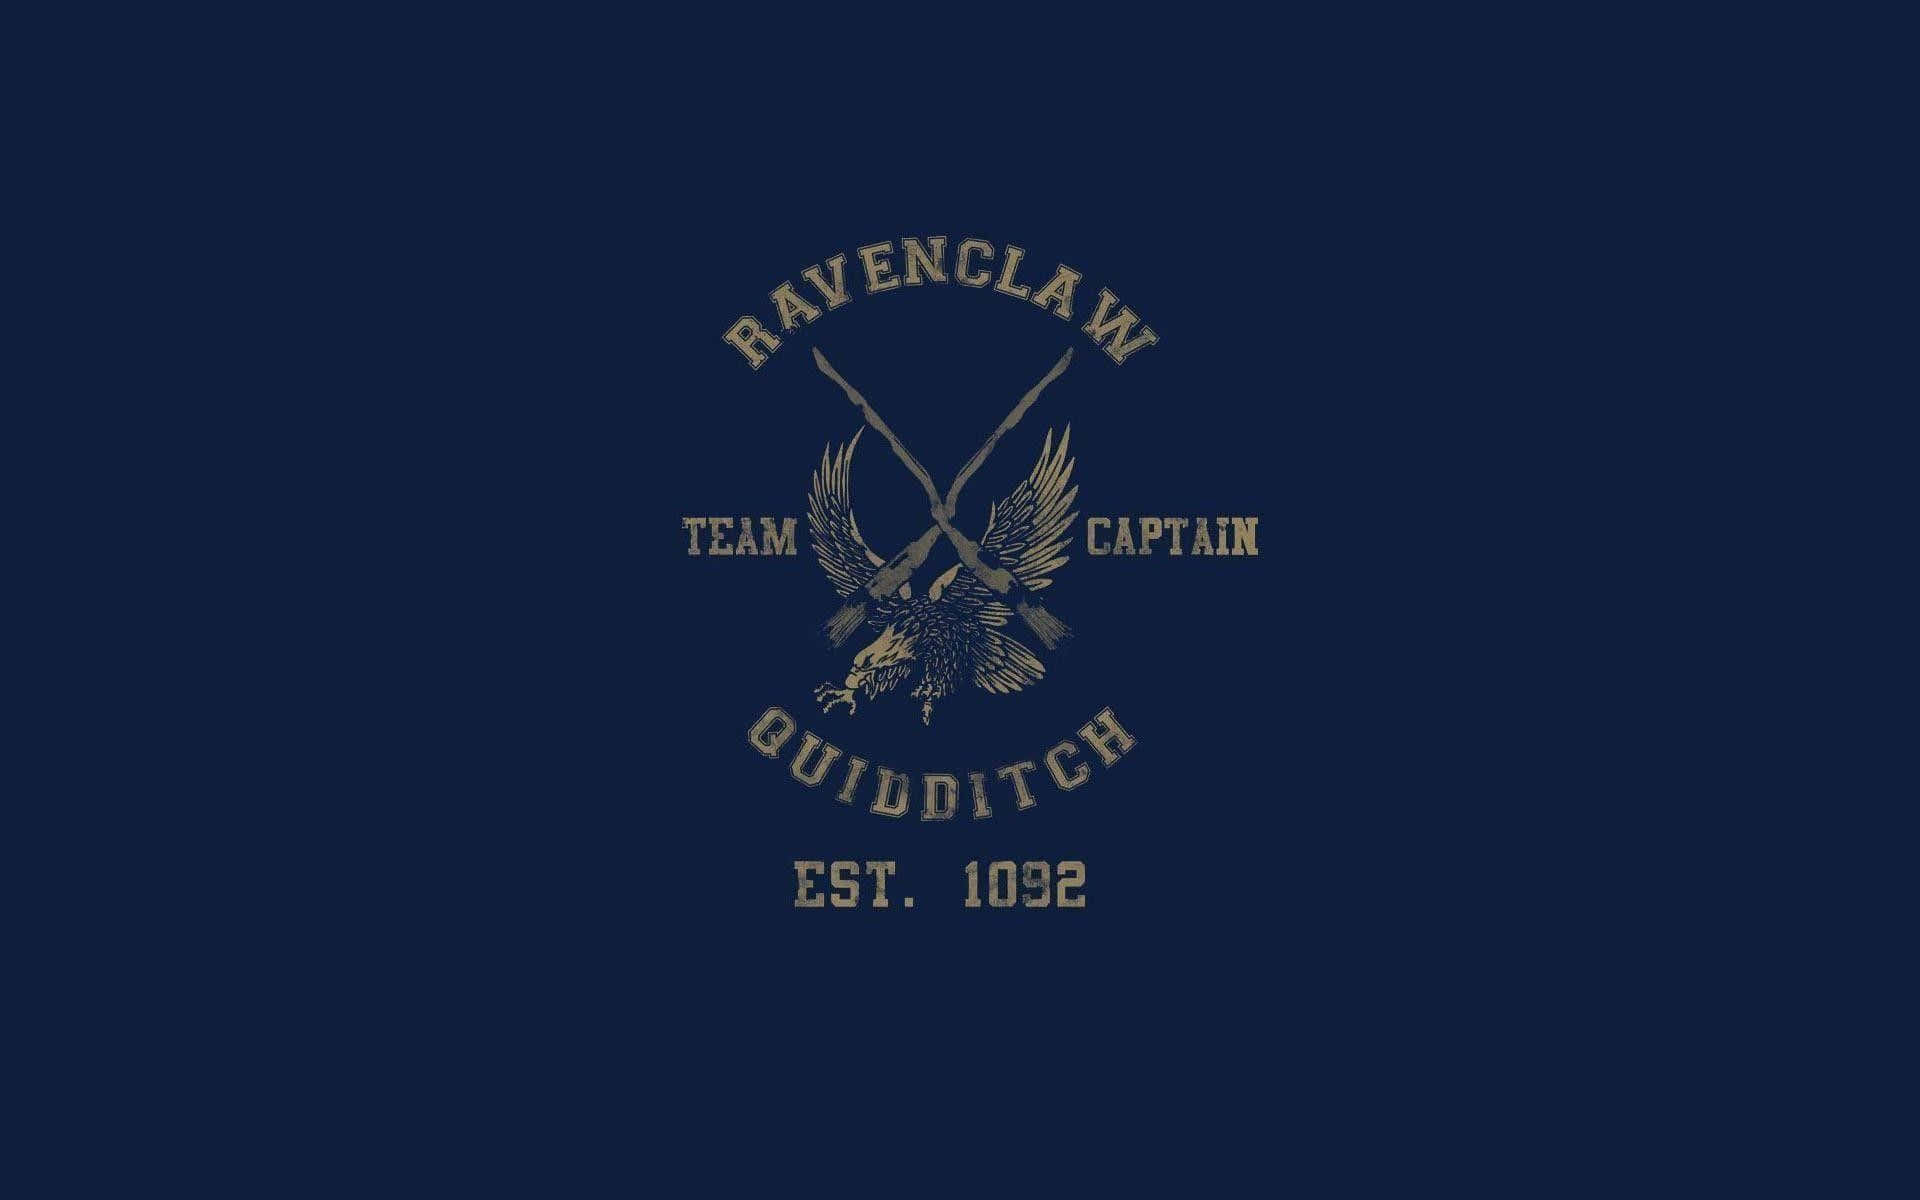 Ravenclaw Quidditch Team Captain Est1092 Wallpaper